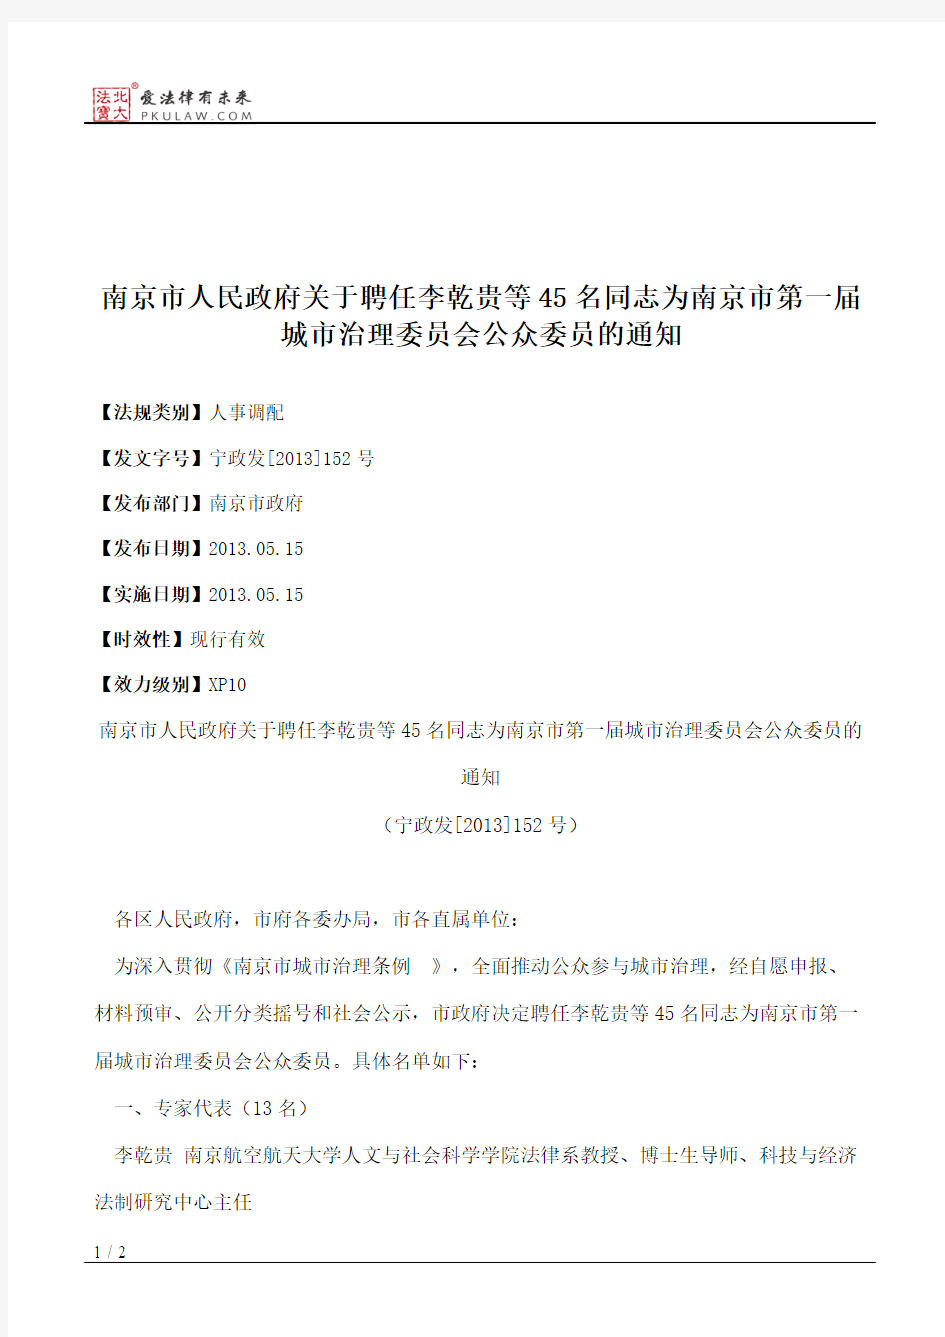 南京市人民政府关于聘任李乾贵等45名同志为南京市第一届城市治理